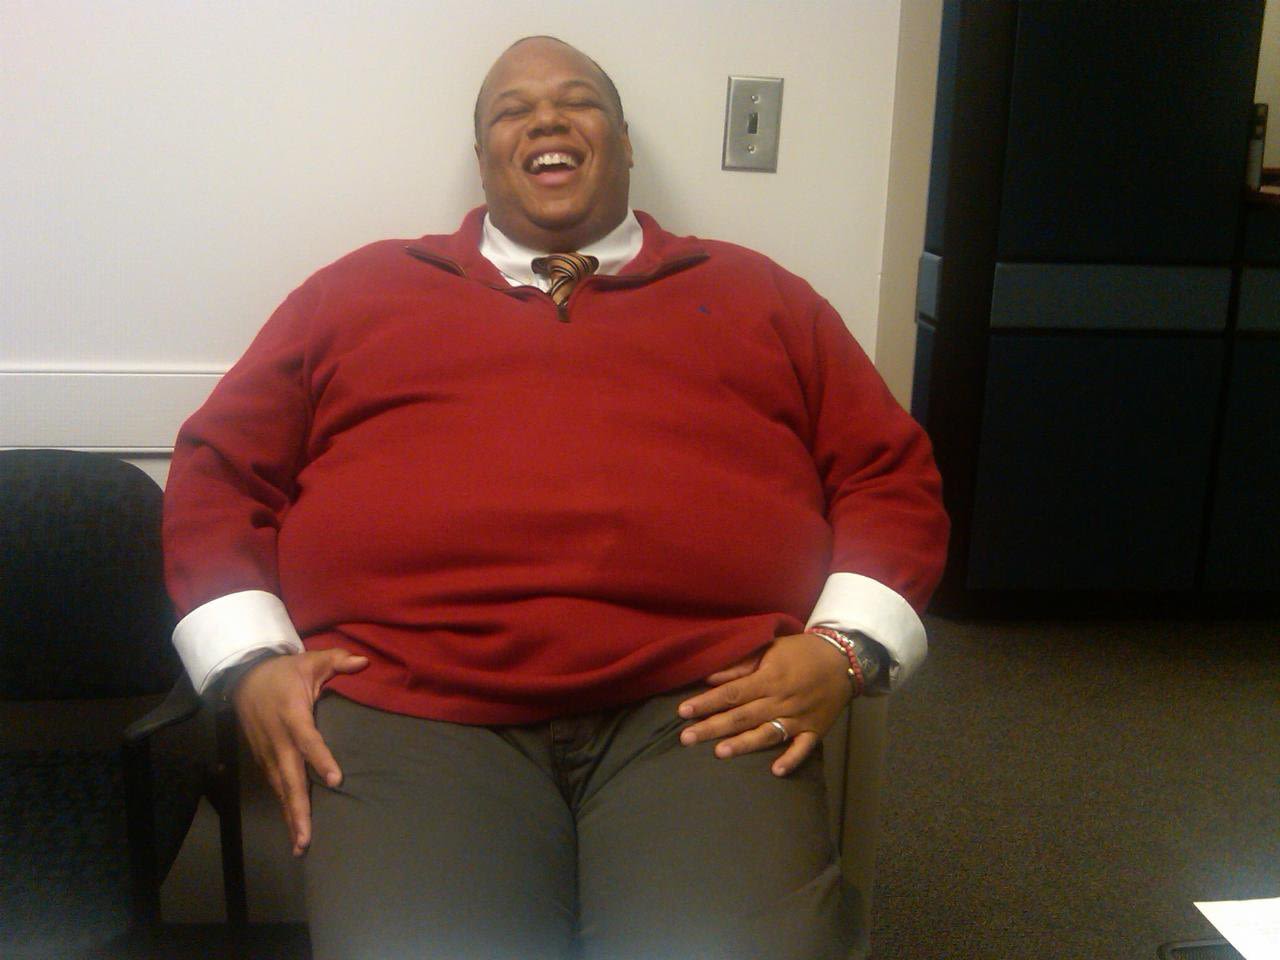 A principios de 2011, Marlon Gibson pesaba 183 kilogramos. Se sentaba en la oficina de un amigo y decía "necesitas sillas más grandes".